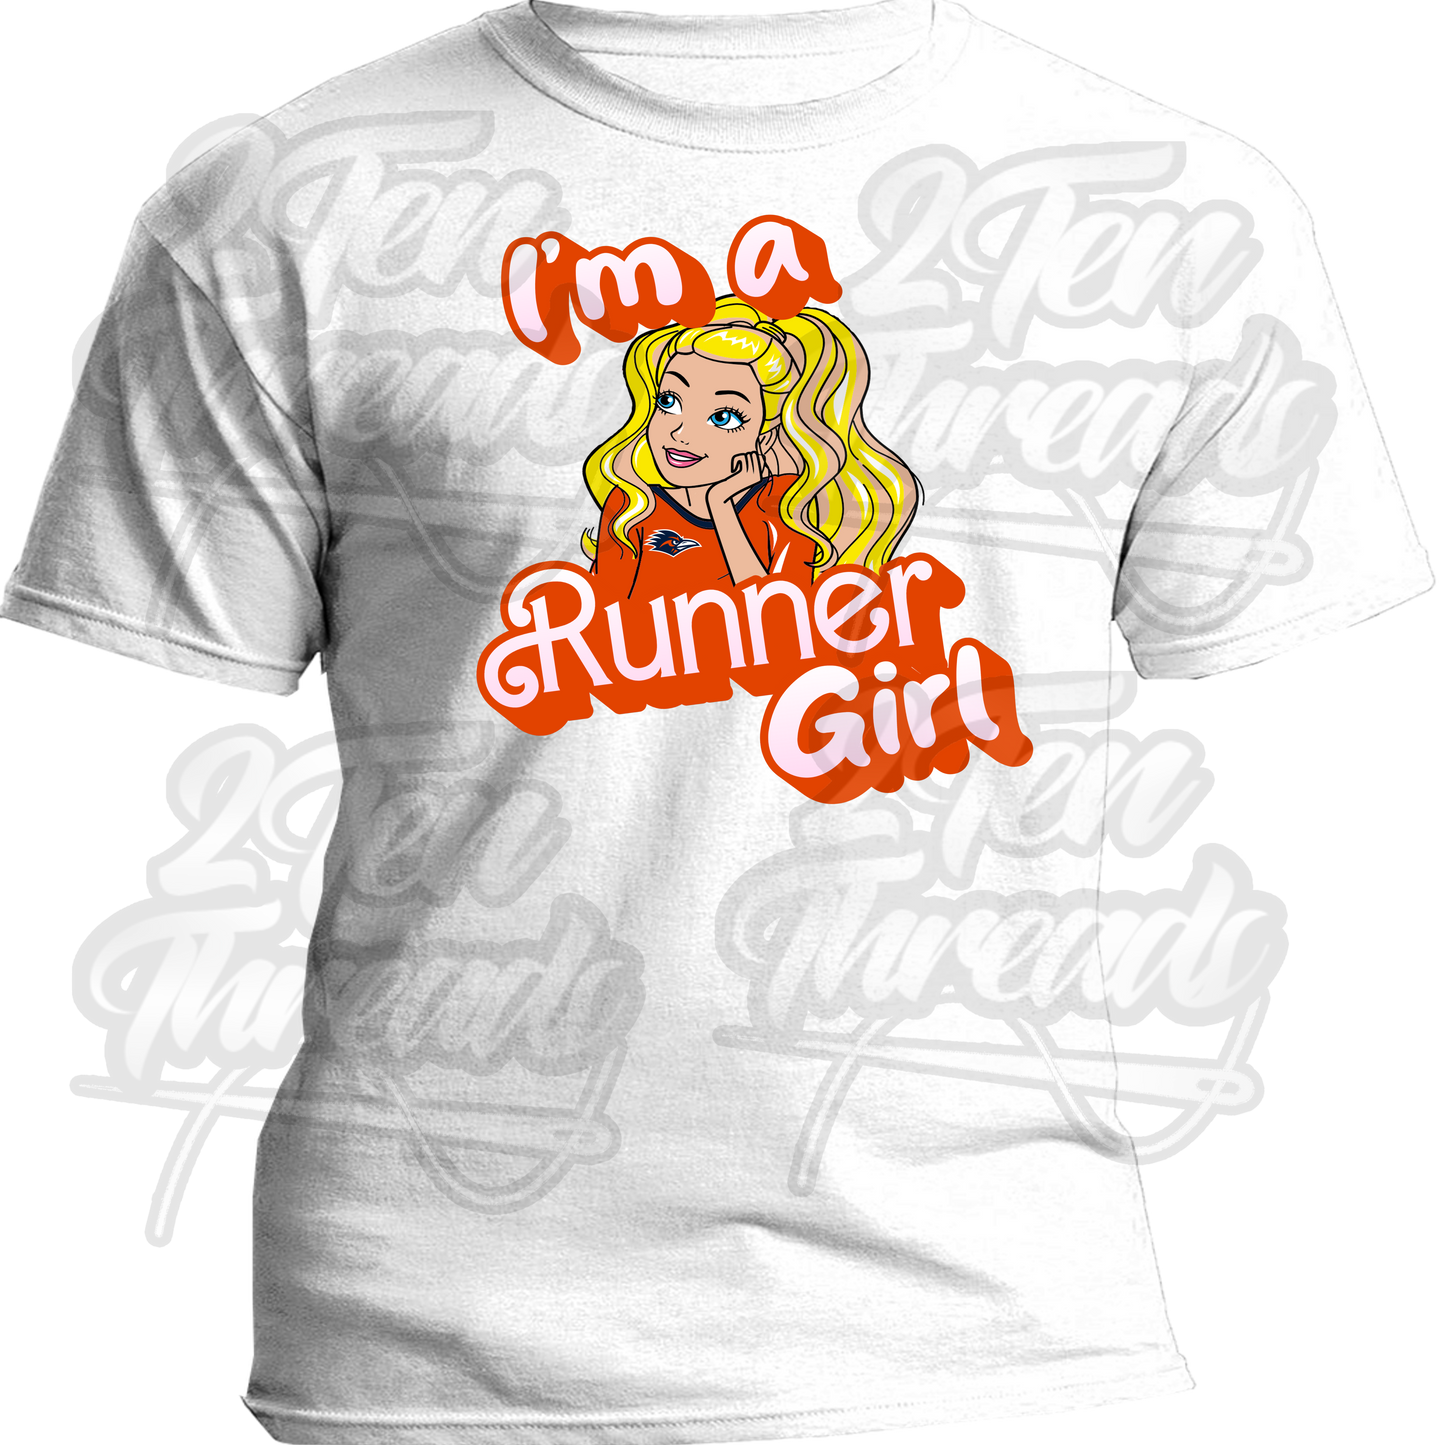 UTSA Barbie Runner Girl Shirt